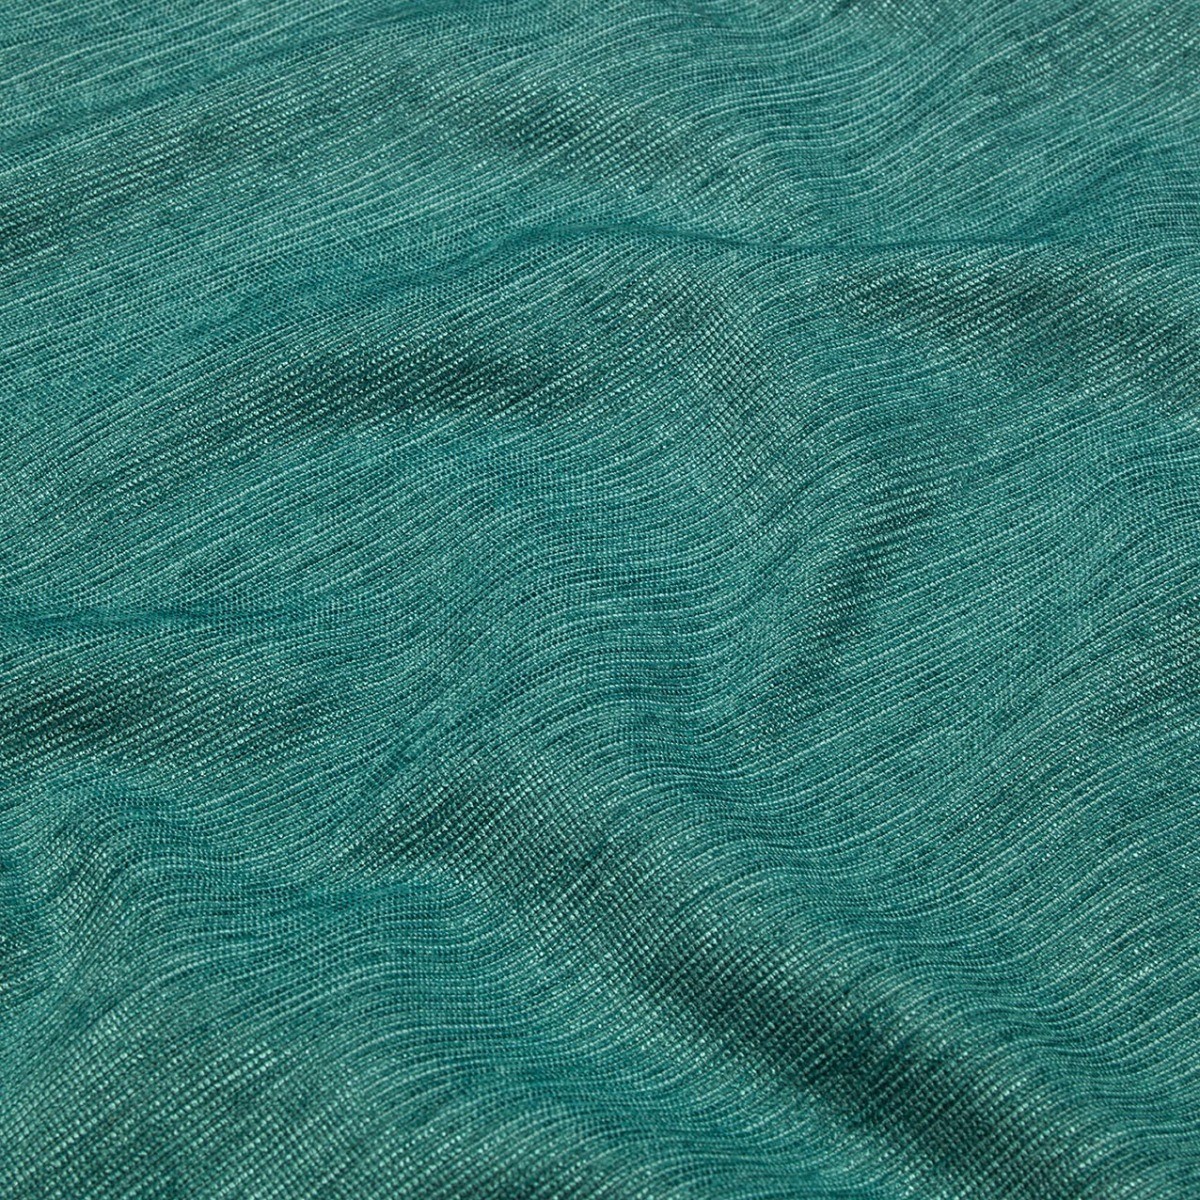  Портьерная ткань CLOVE AZUR, ширина 290 см  - Фото